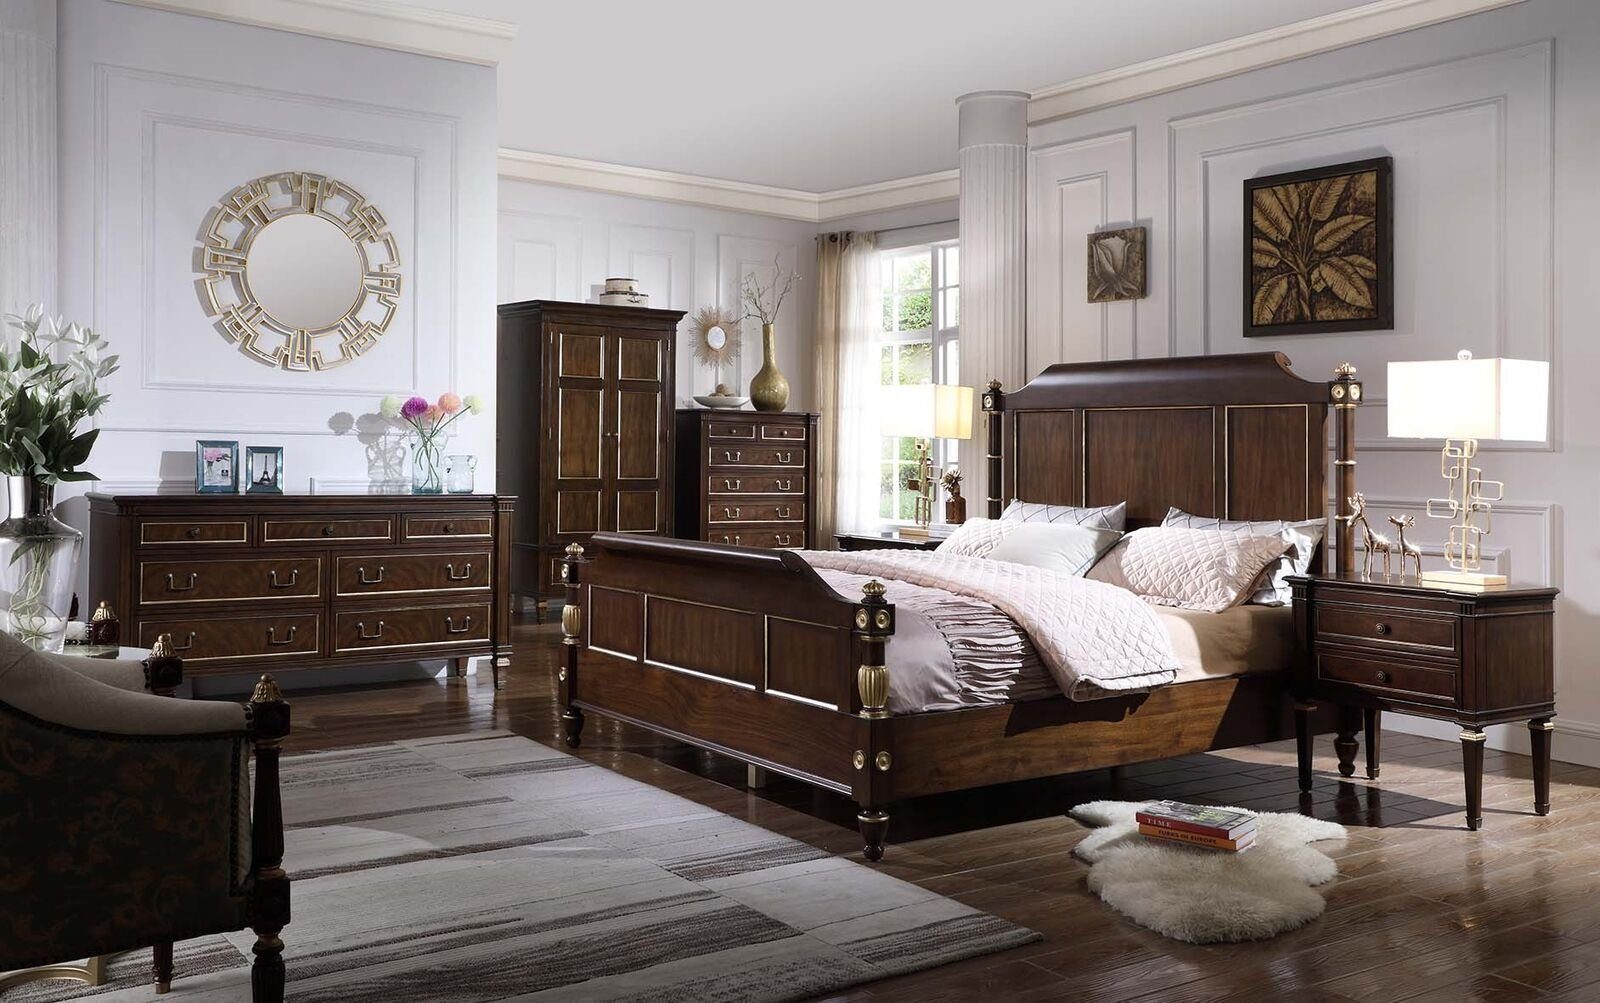 Schlafzimmer-Set Holz, Set Made Luxus 3tlg JVmoebel Schlafzimmer Design Bett neu In Nachttische Europe Modern 2x